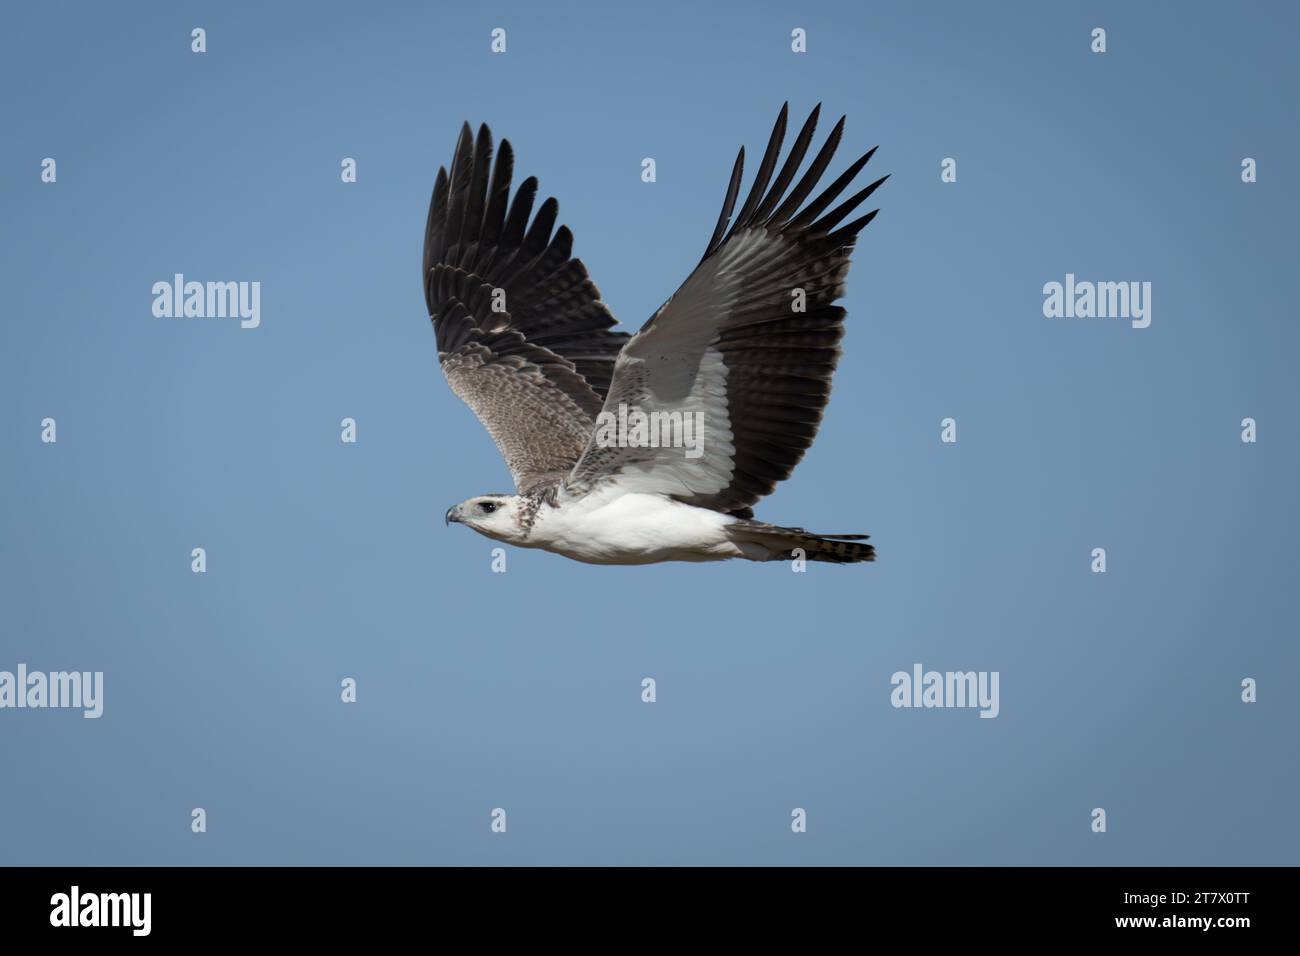 Juvenile martial eagle flies through blue sky Stock Photo